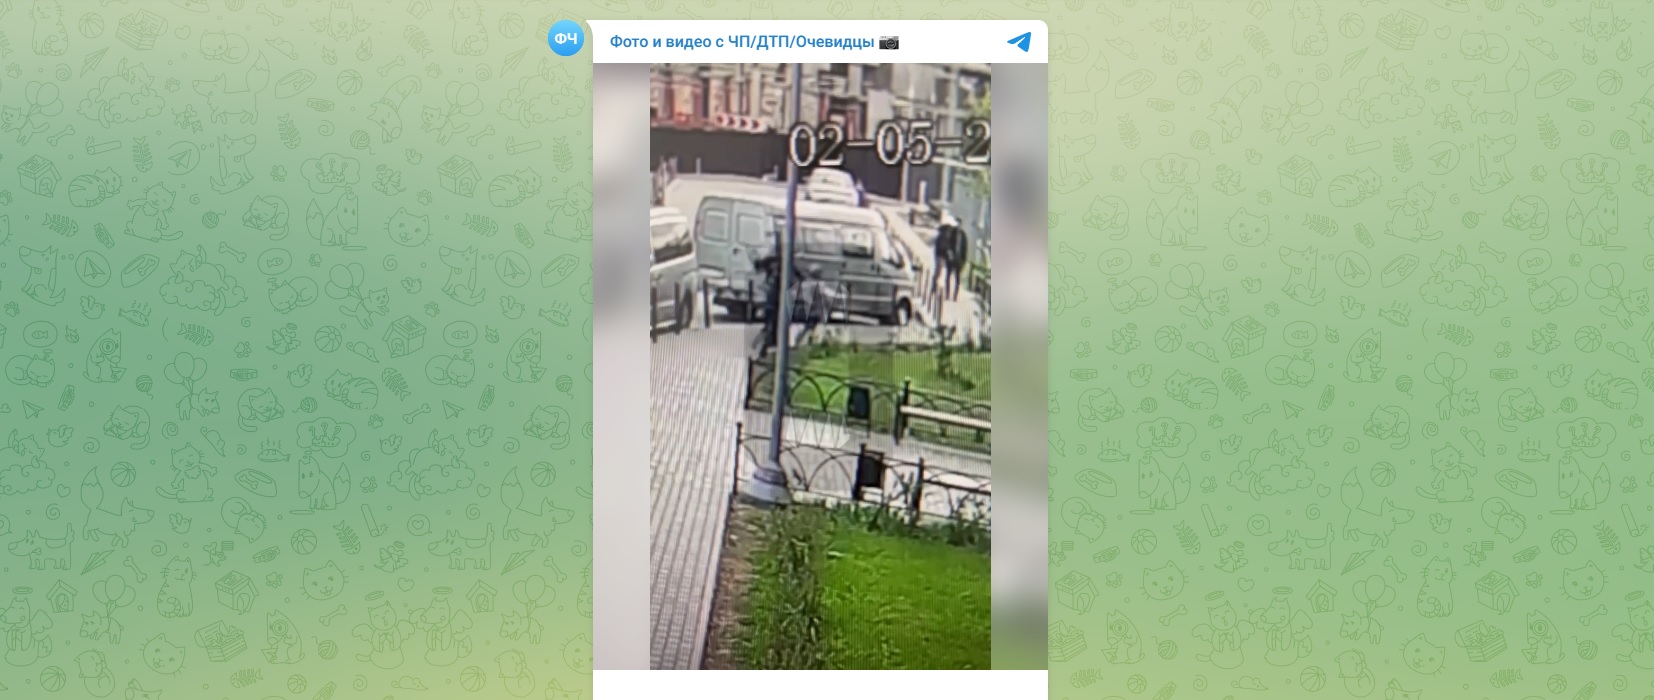 Избиение пьяным мужчиной школьницы в Люберцах попало на видео